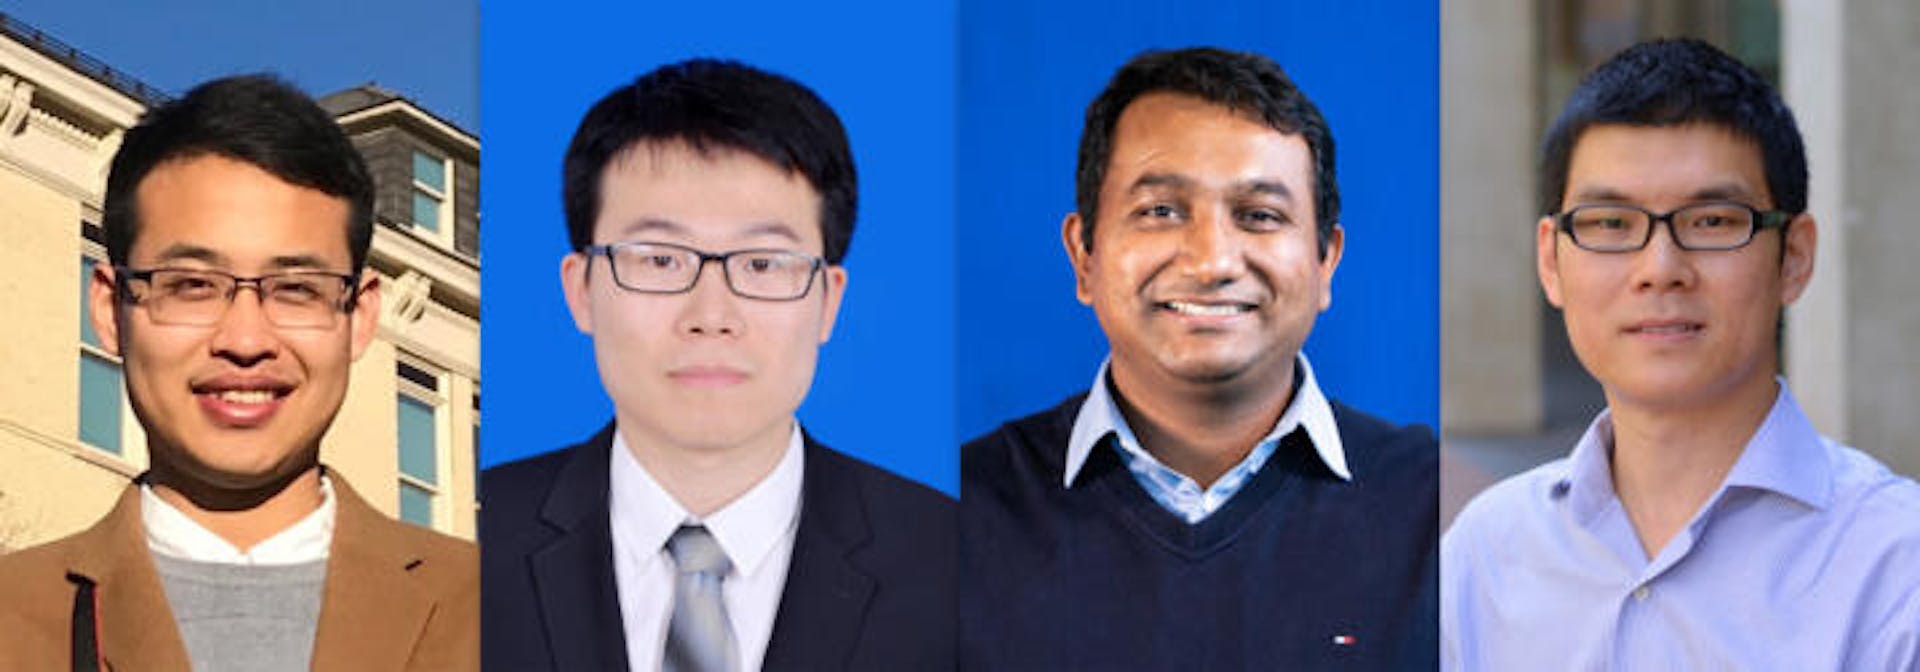 Chú thích: Từ trái sang phải: Pengfei Li, Jianyi Yang, Mohammad A. Islam, Shaolei Ren Nguồn: Nguồn, từ trái sang phải: Qiuxiao Chen, UC Riverside, UT Arlington, UC Riverside